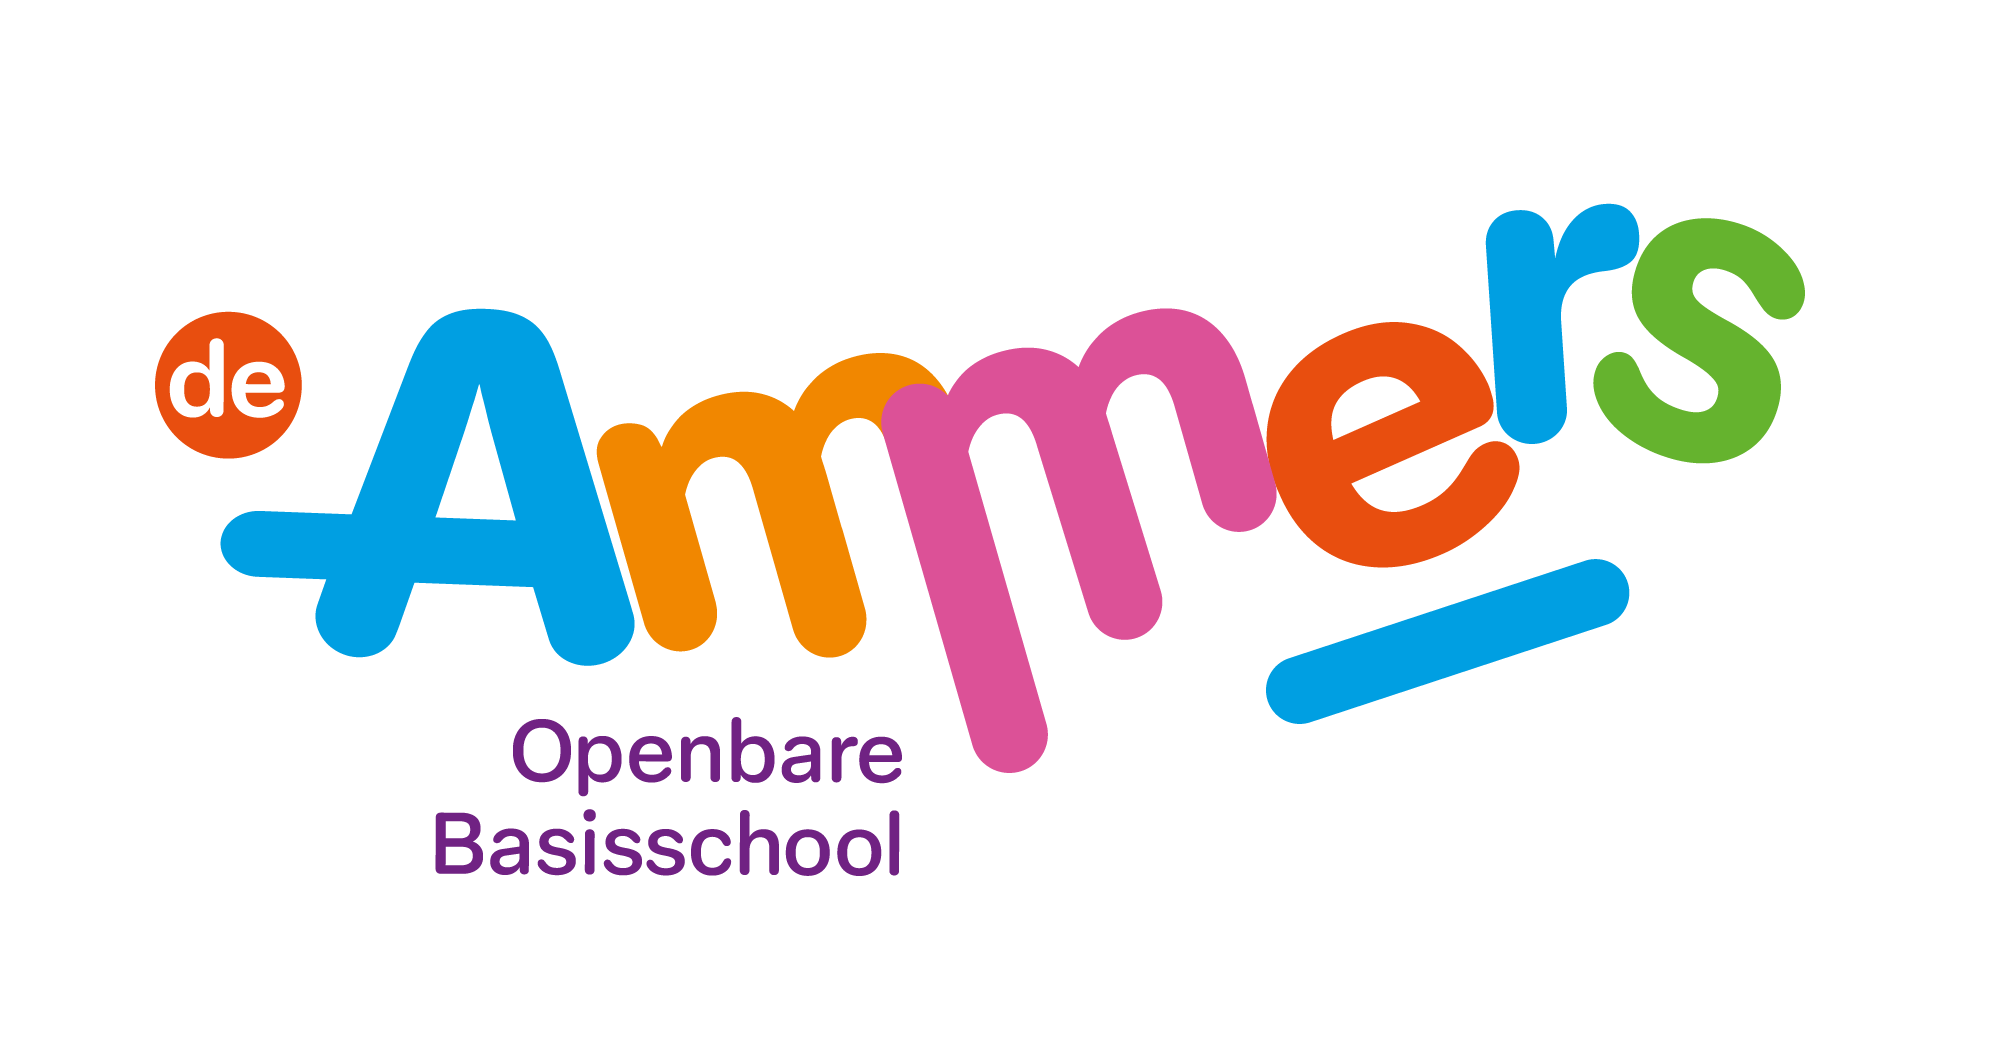 Openbare basischool De Ammers